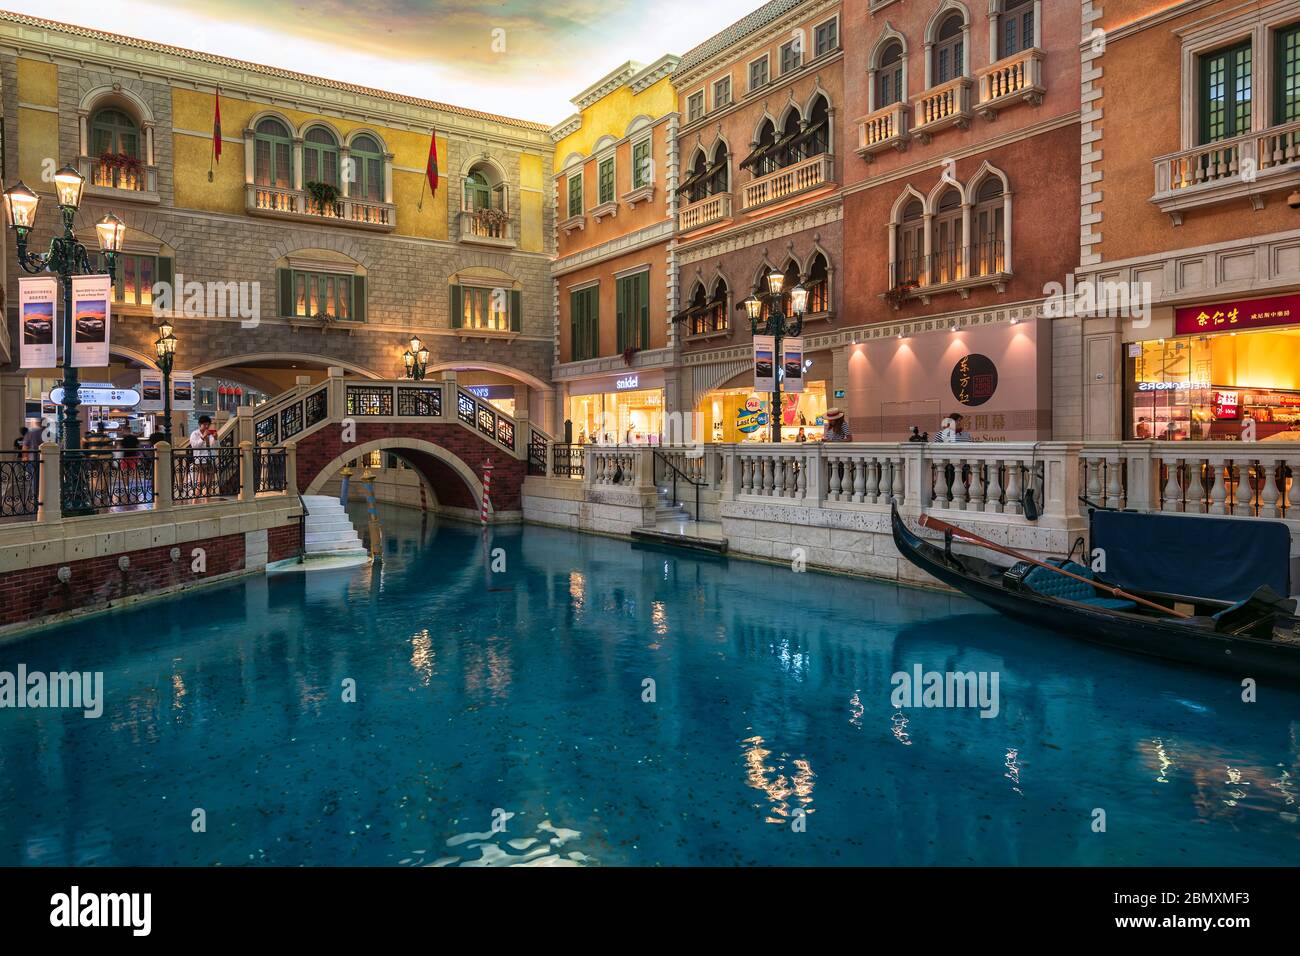 Macao, Cina - 16 Maggio 2020: Il Venetian Macao Luxury Hotel Resort è una delle migliori destinazioni al mondo per il gioco d'azzardo. Foto Stock